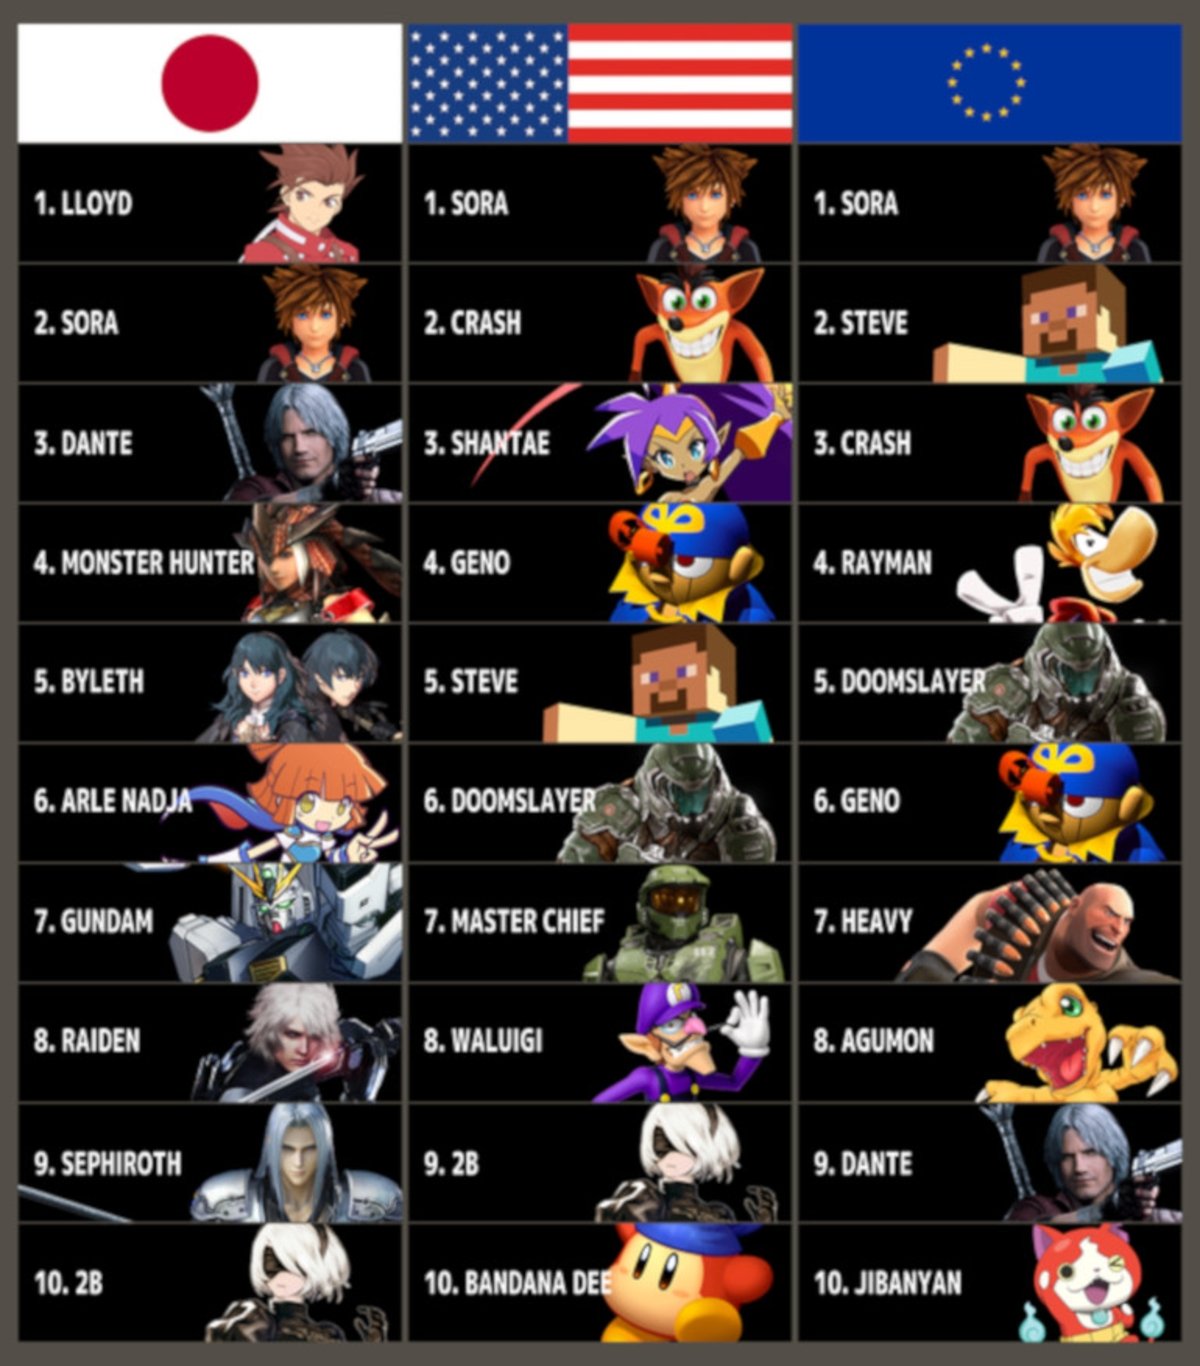 Personajes DLC comunidad Smash Bros. Ultimate